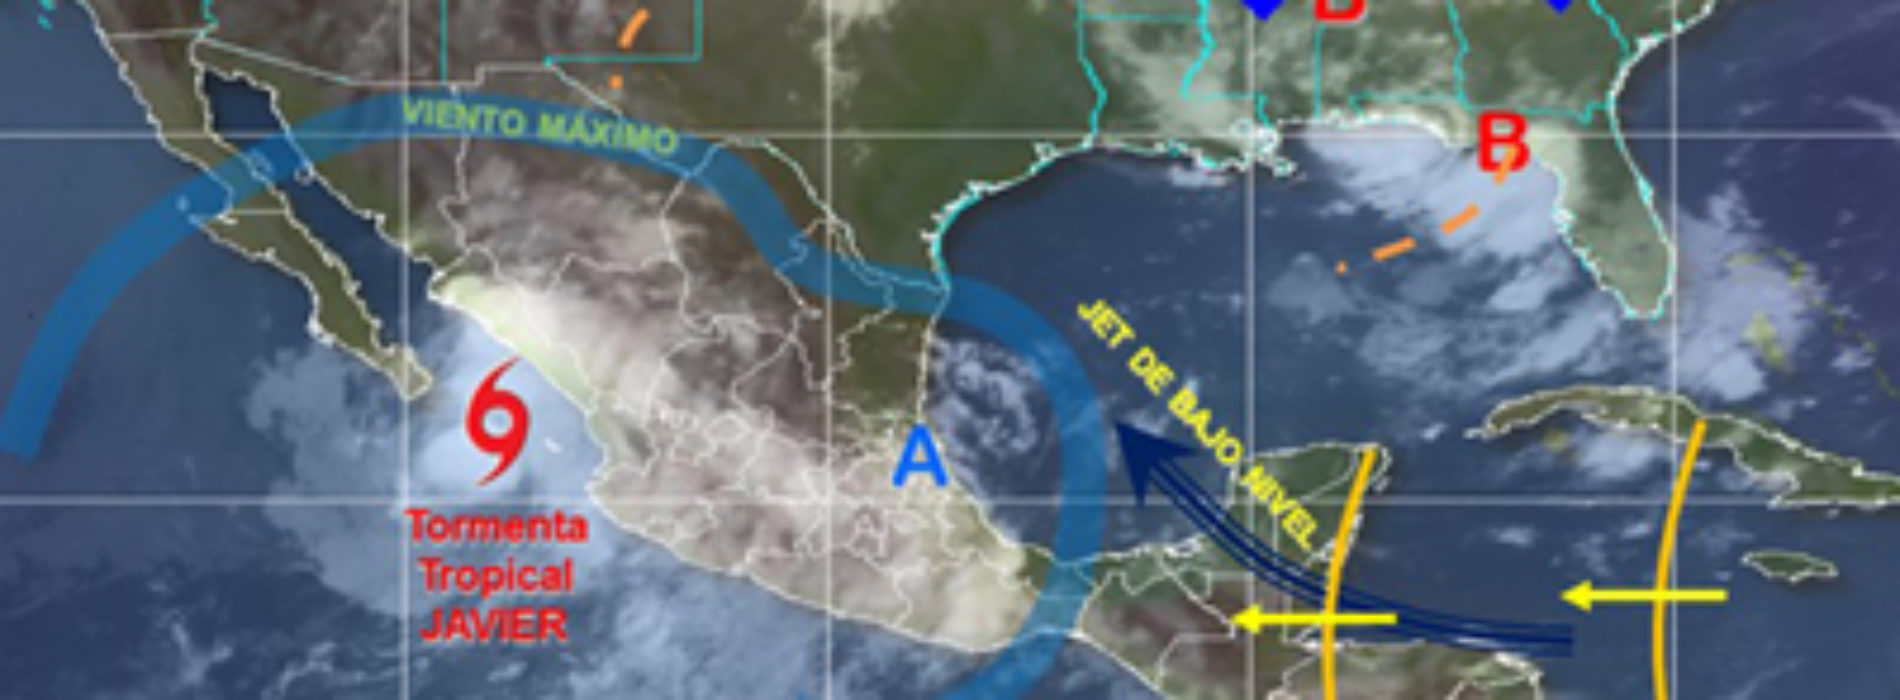 Prevén potencial de tormentas puntuales fuertes en Oaxaca